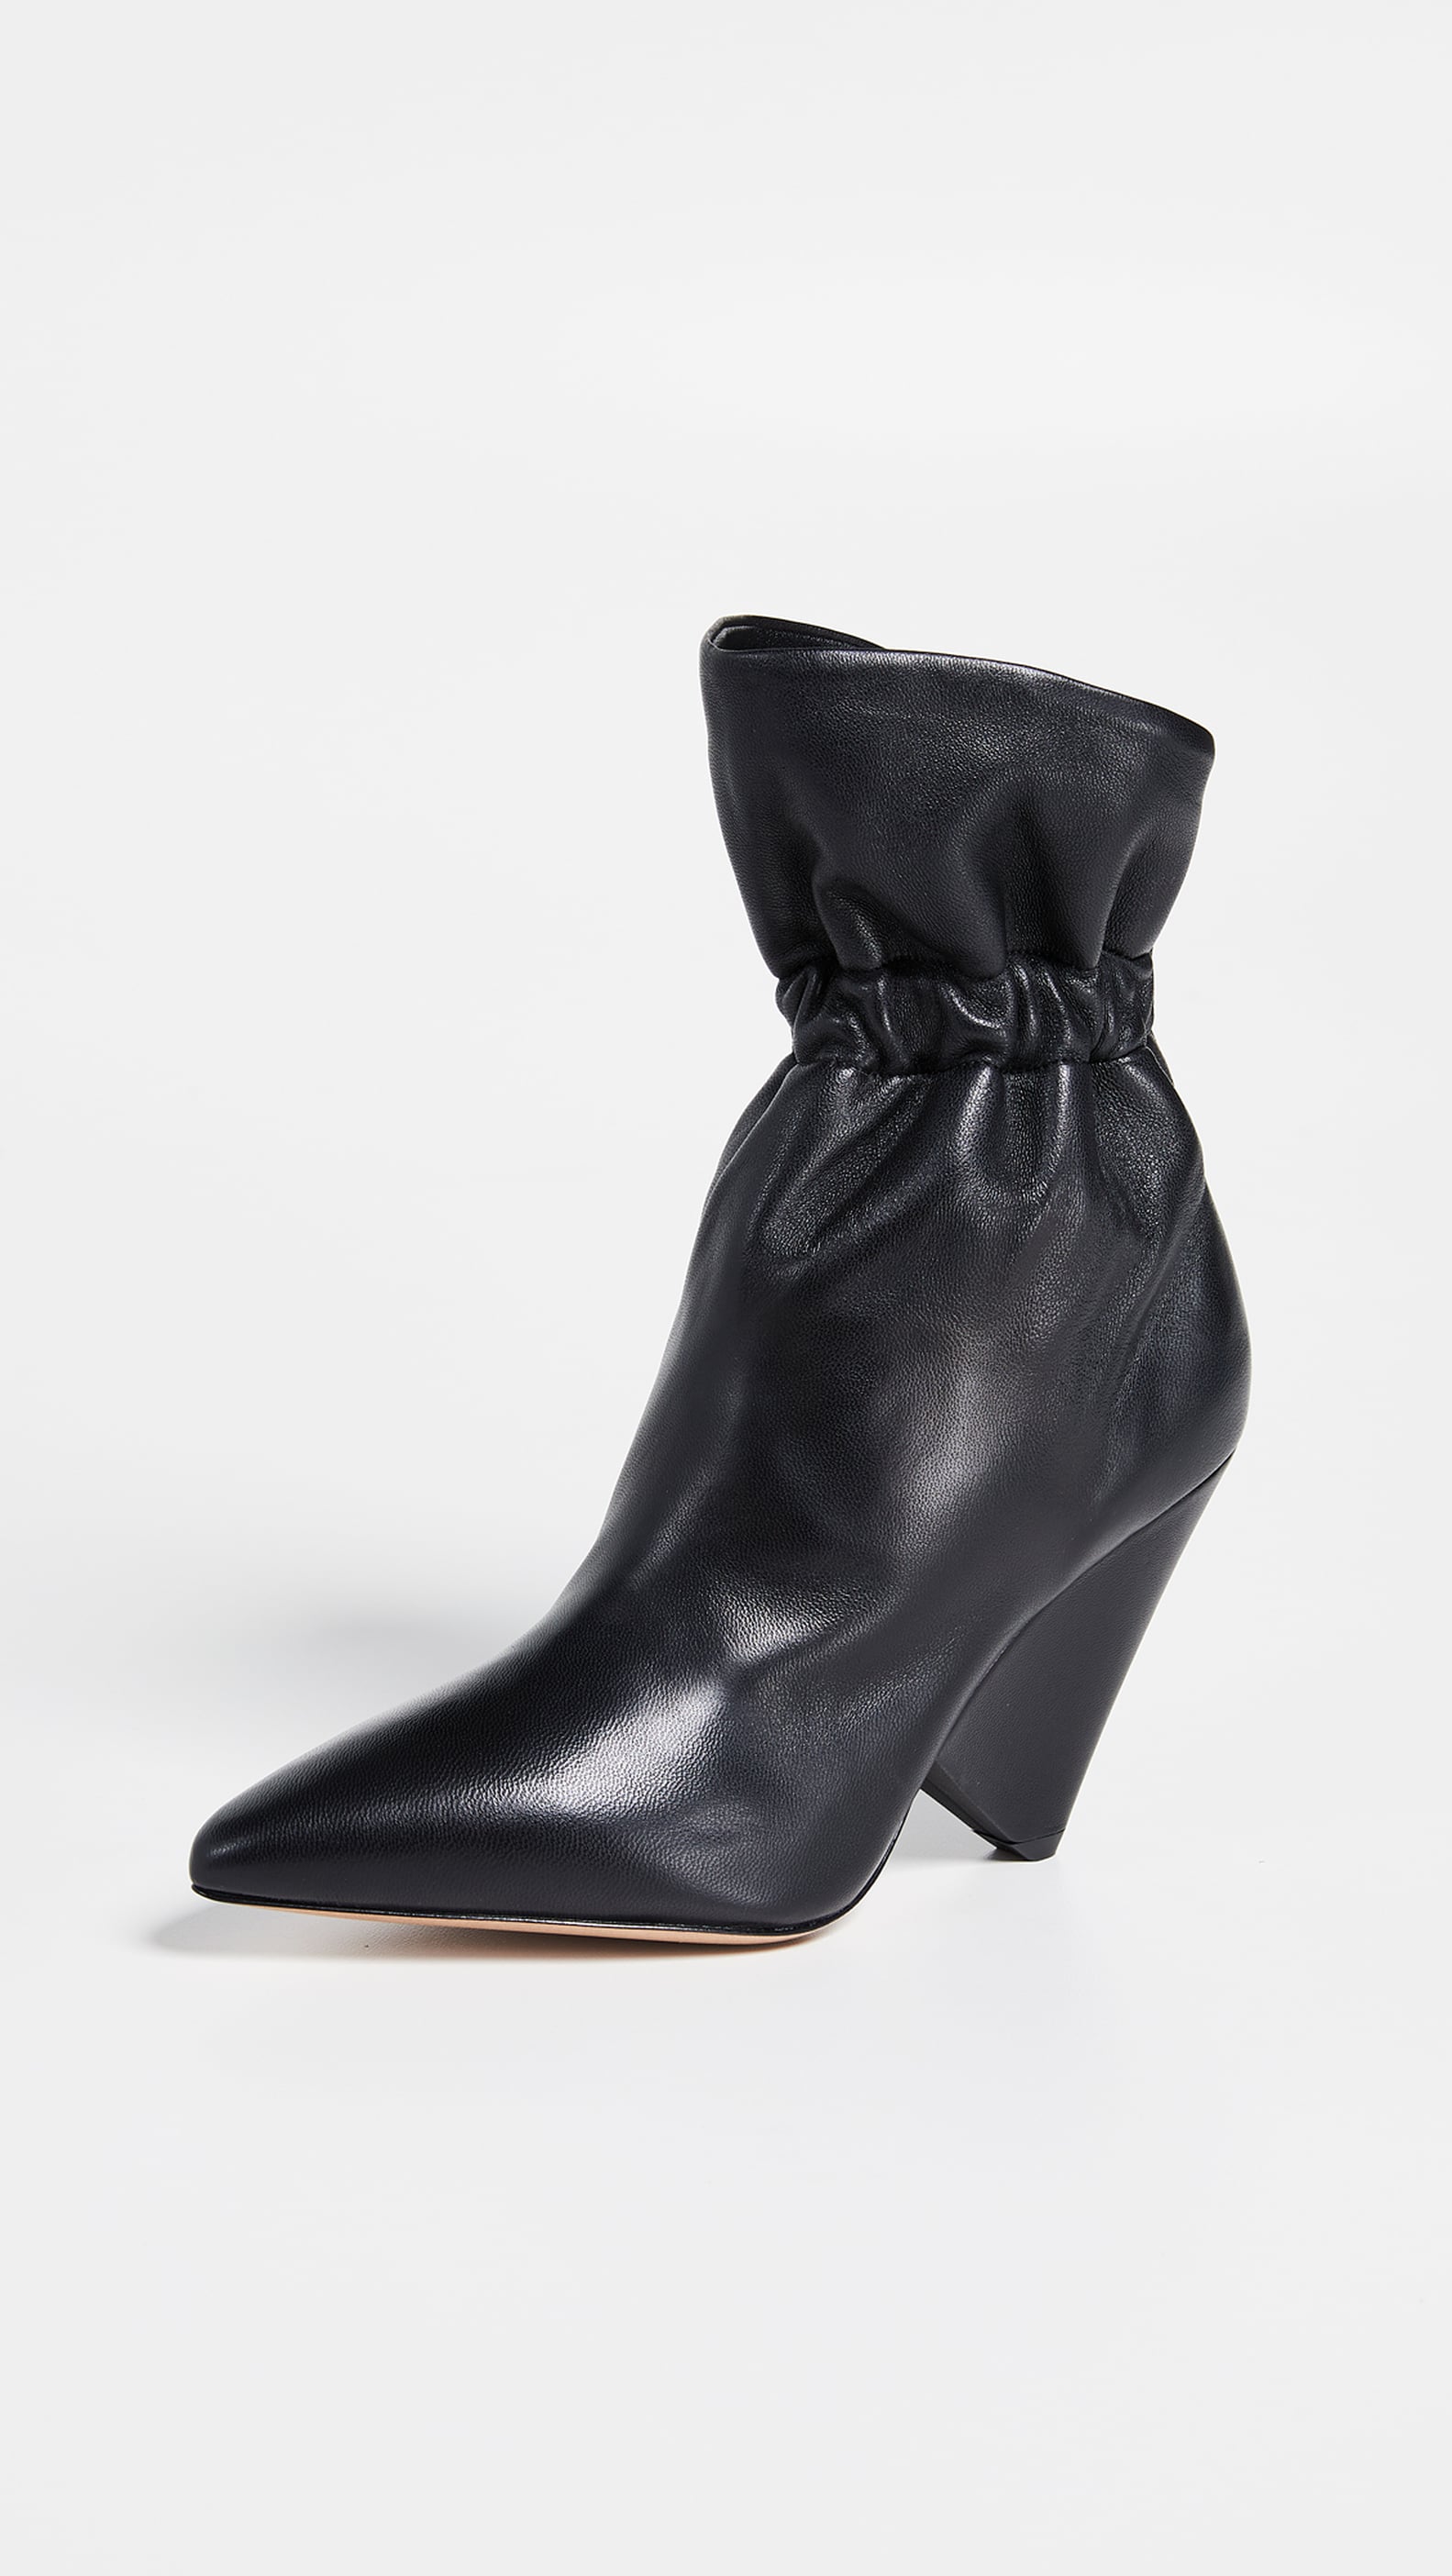 Hailey Baldwin's Black Ash Boots January 2019 | POPSUGAR Fashion